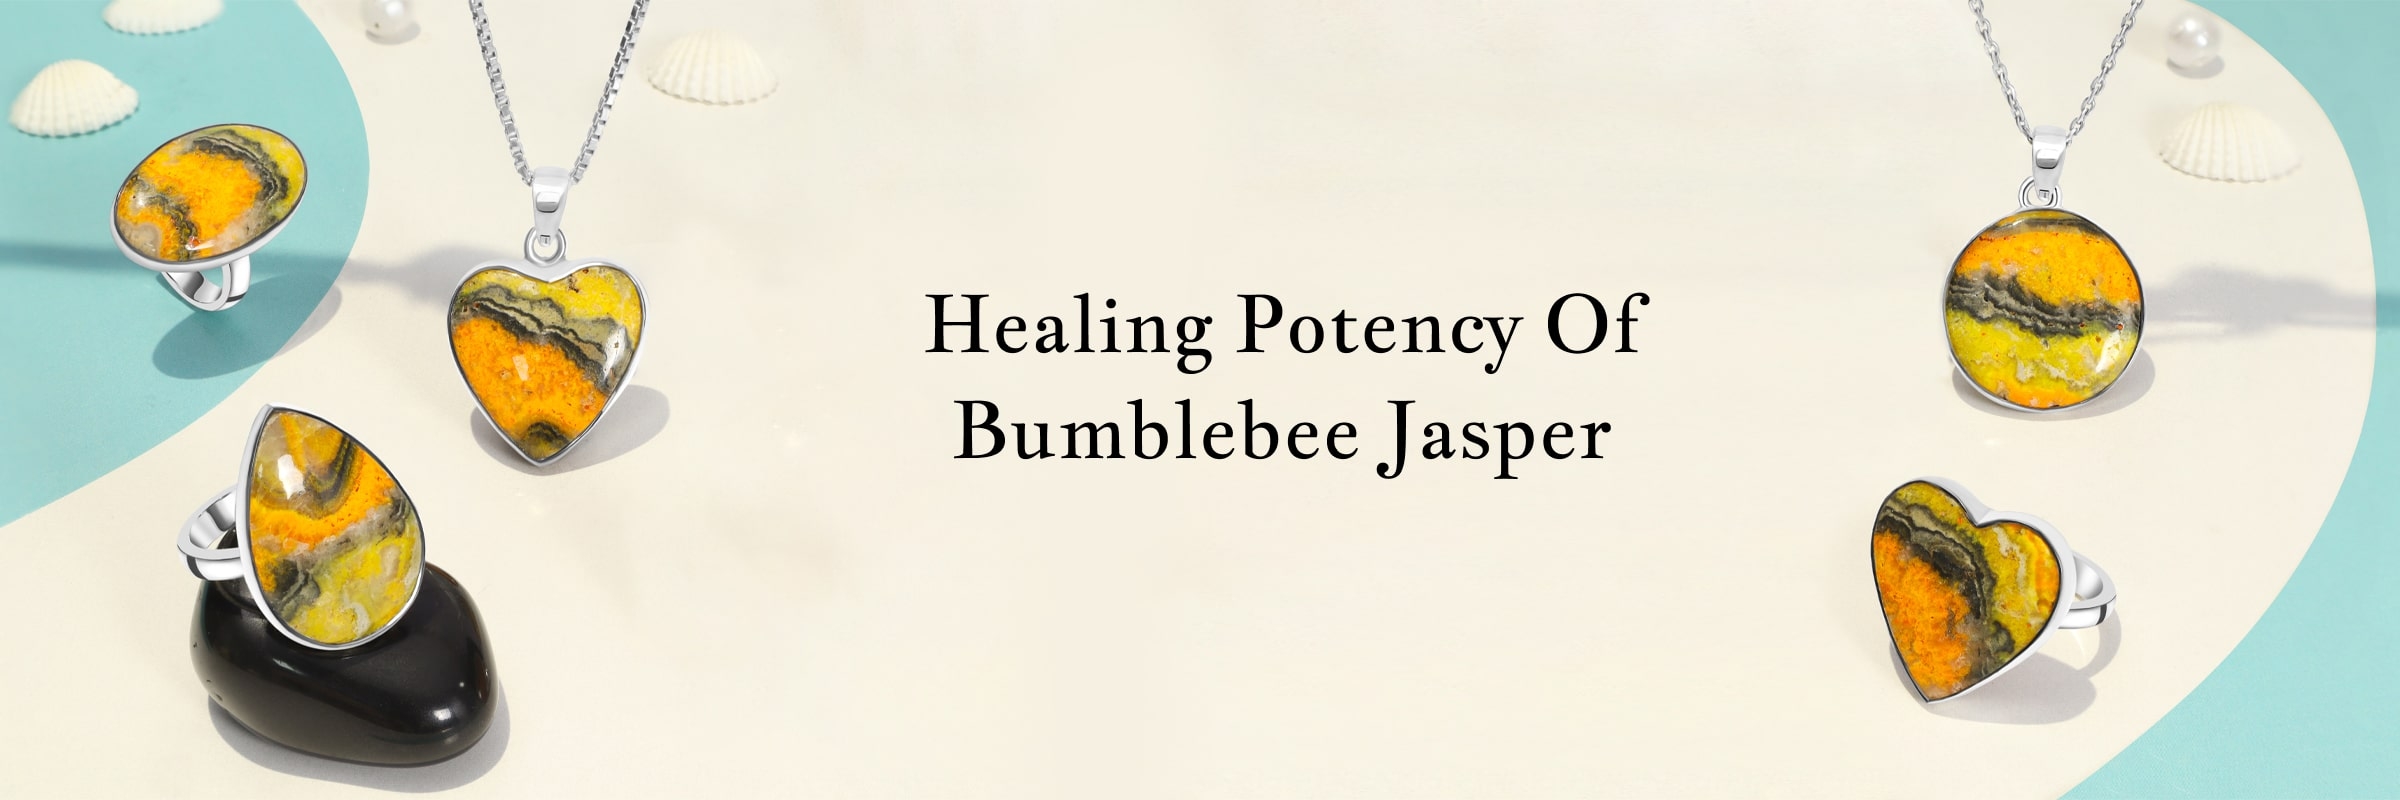 Bumblebee Jasper Healing Properties and Benefits